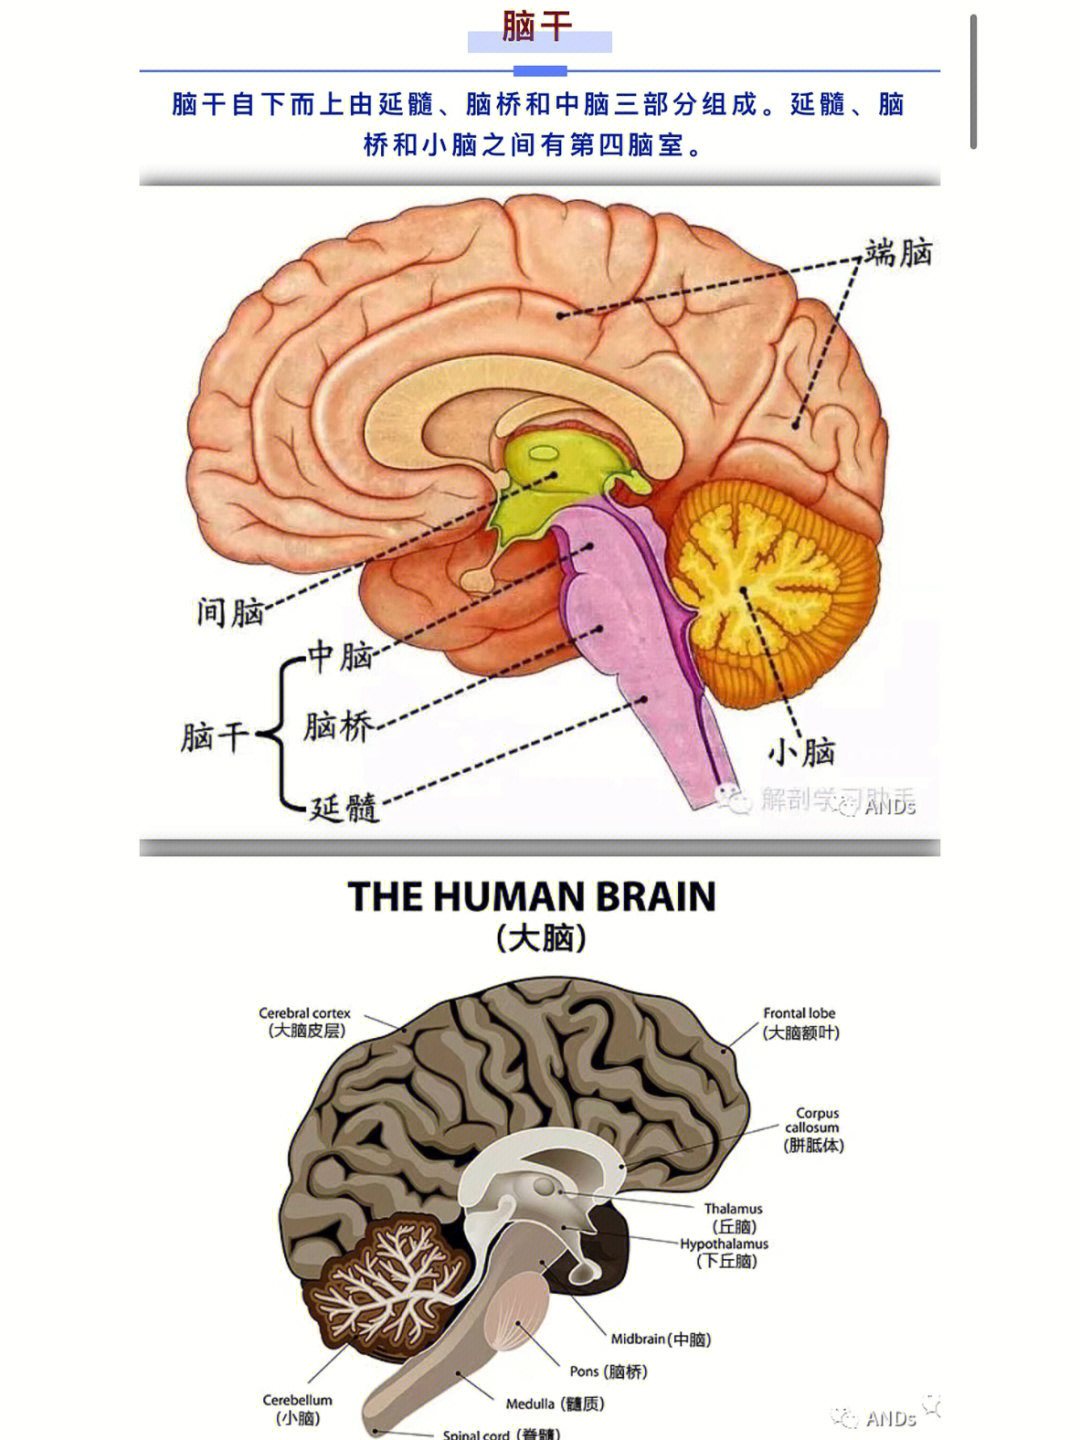 脑干由三部分组成,分别为中脑,脑桥和延髓中脑:发出第3,4对脑神经脑桥